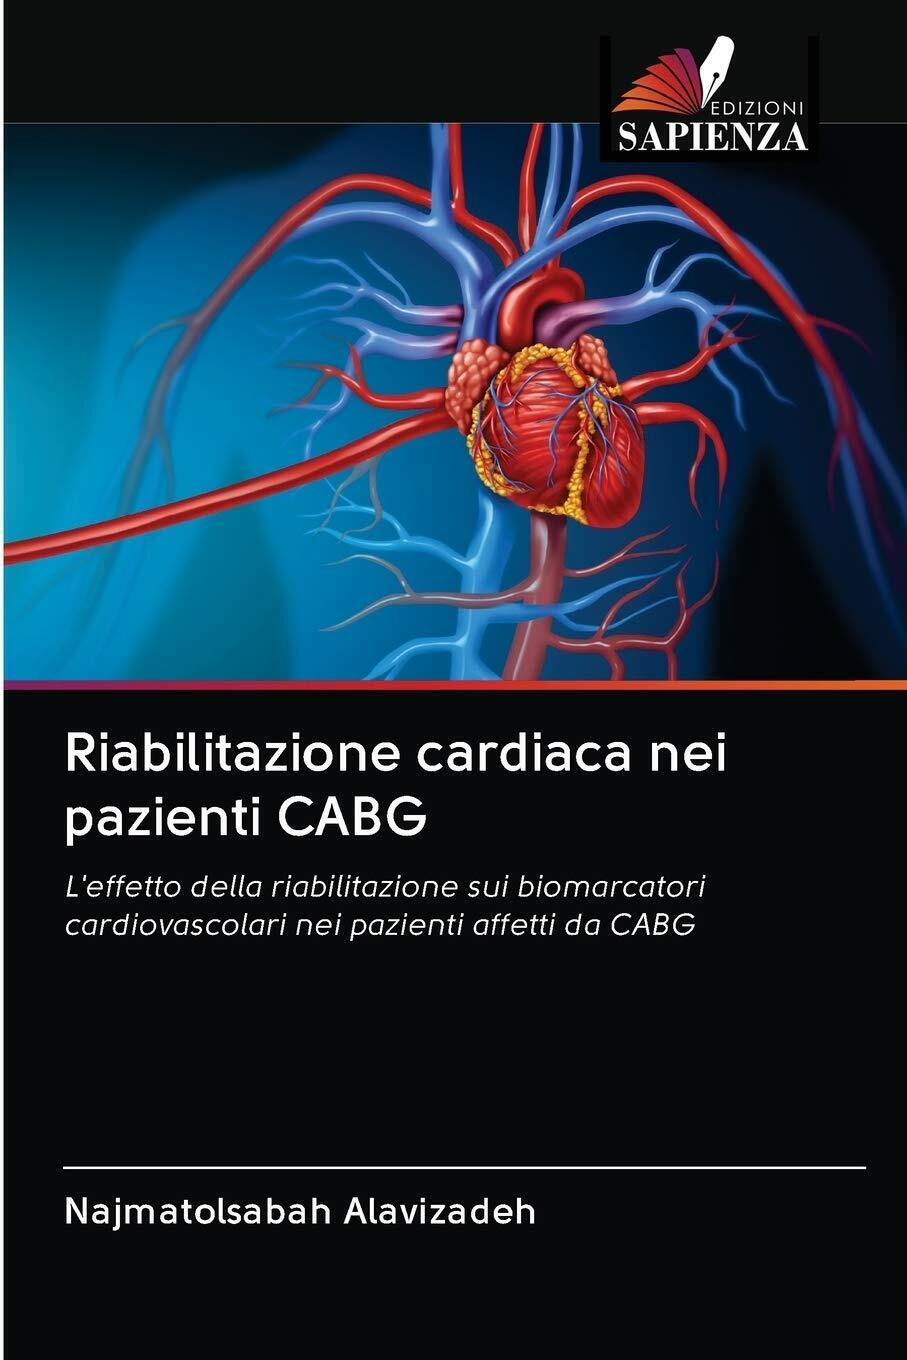 Riabilitazione cardiaca nei pazienti CABG - Alavizadeh - Edizione Sapienza-2020